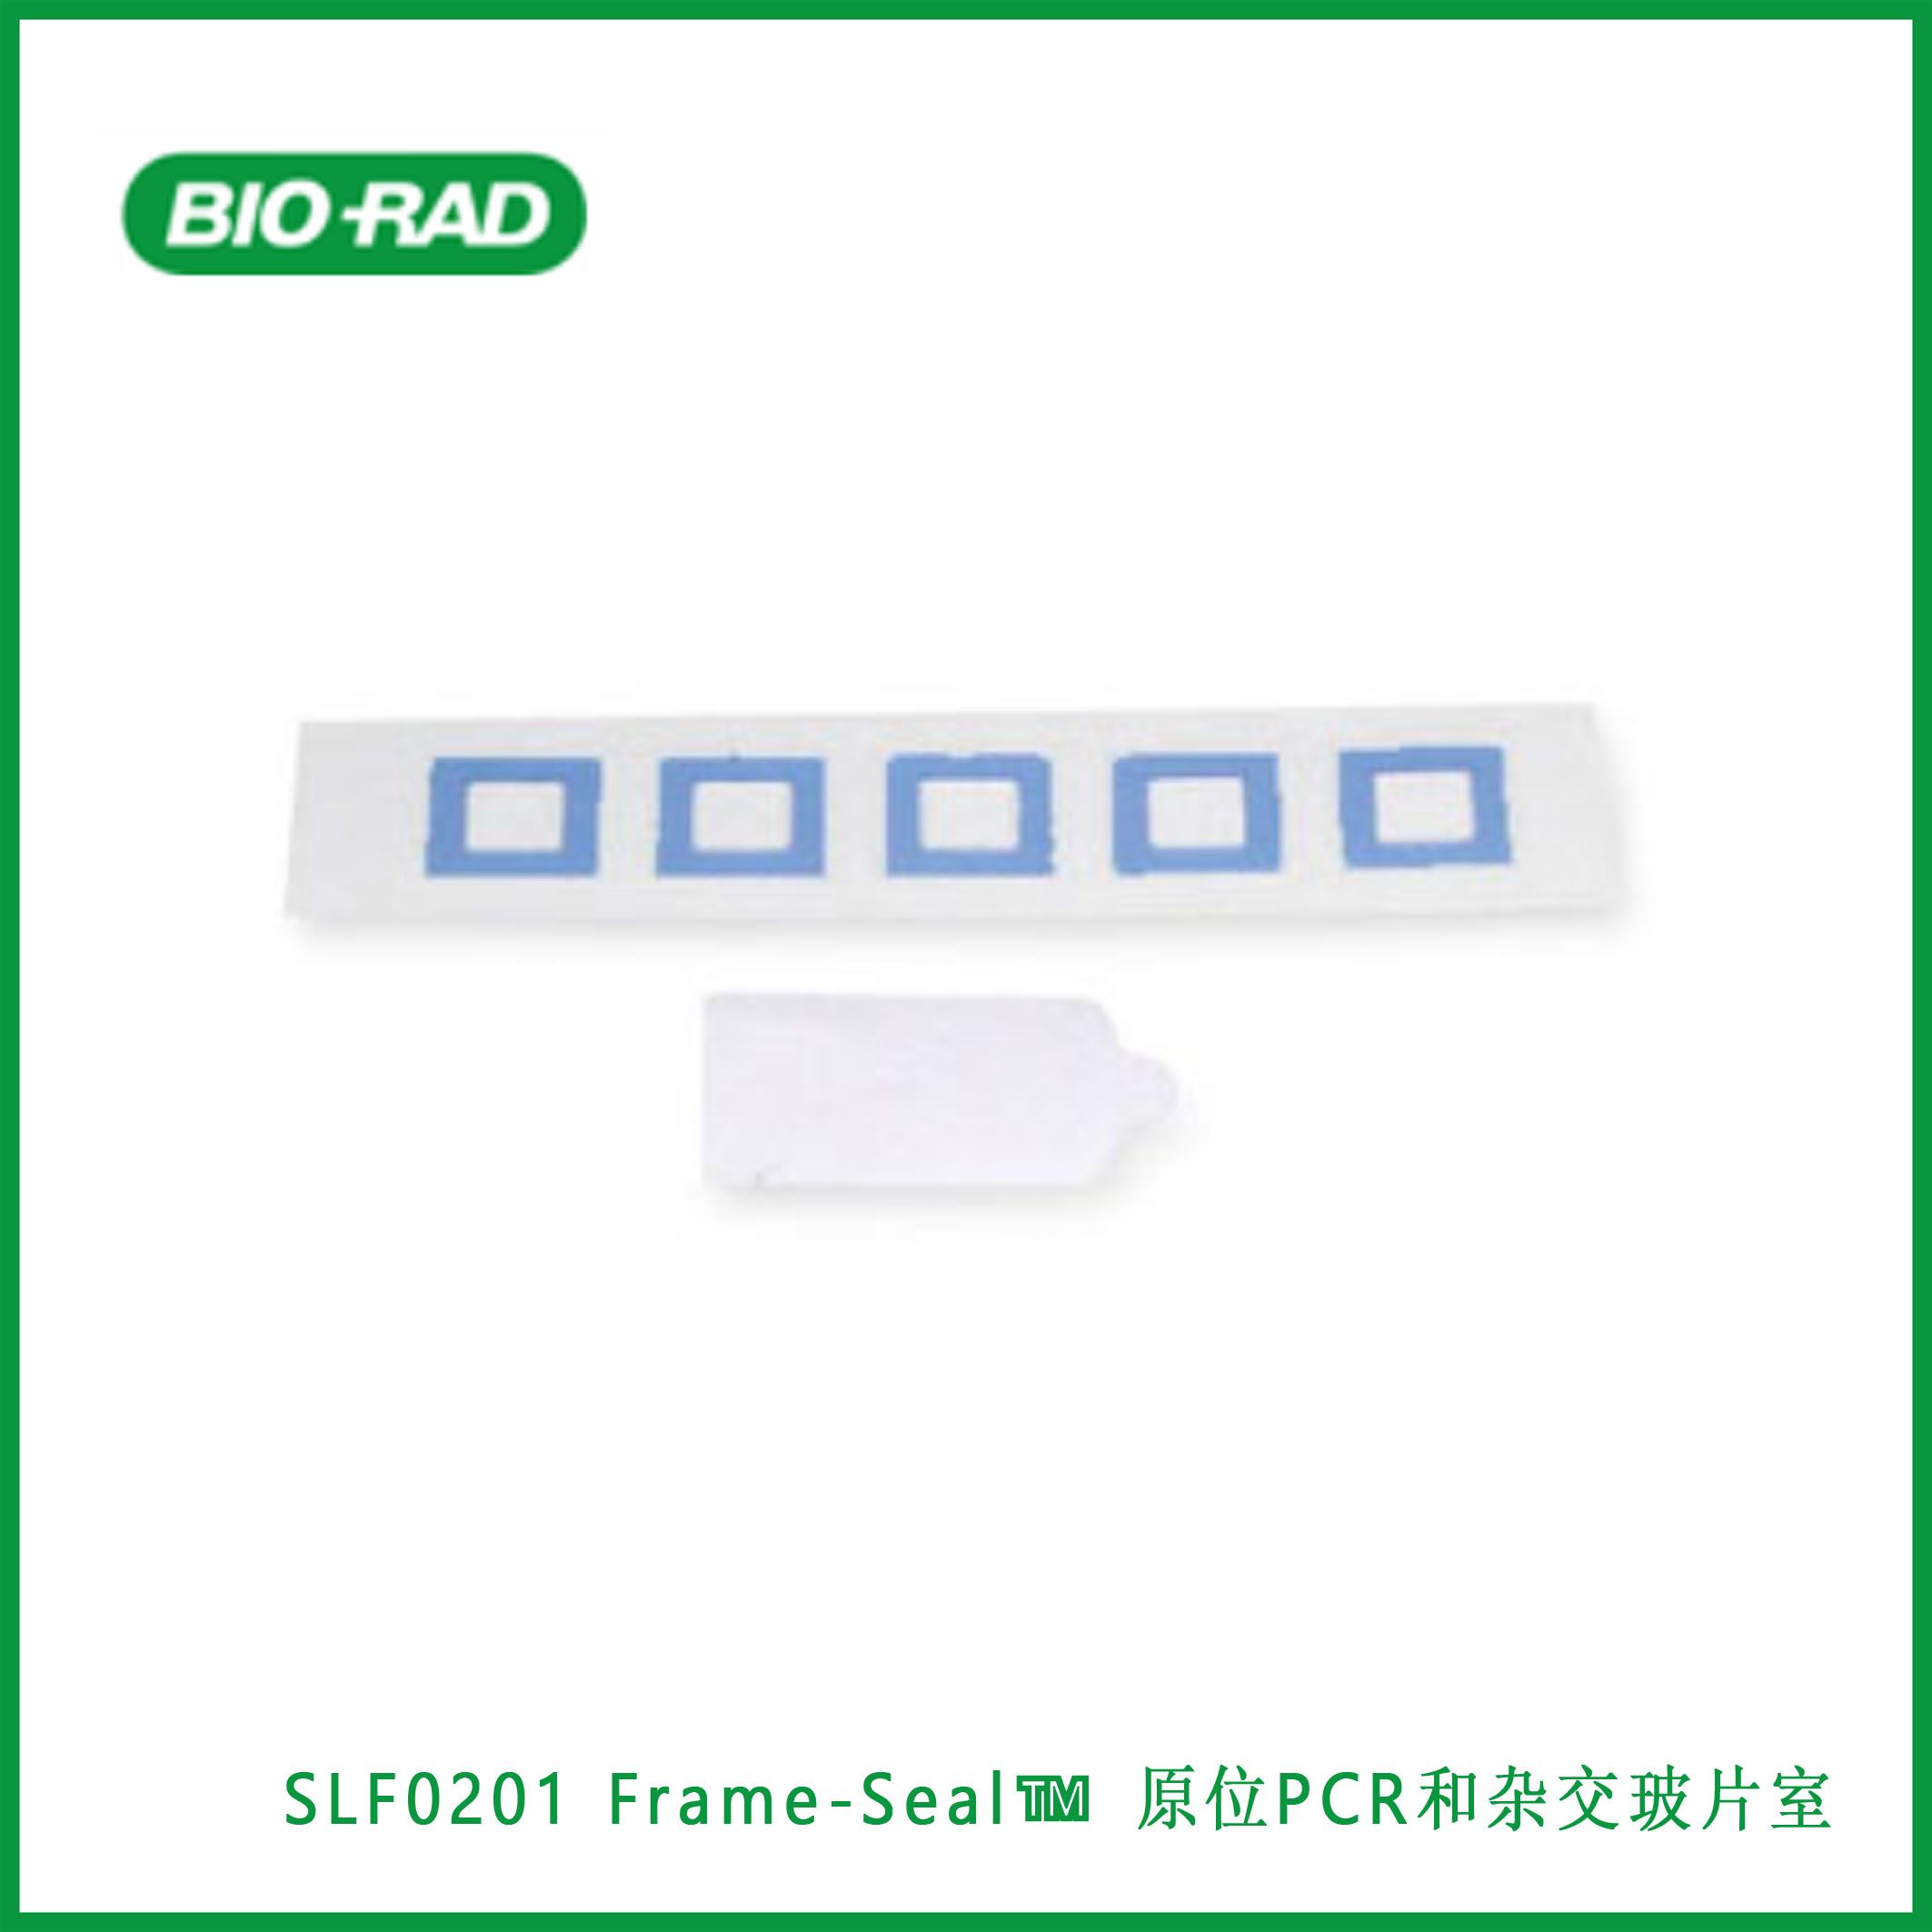 伯乐Bio-RadSLF0201 Frame-Seal™ in situ PCR and Hybridization Slide Chambers, 9 x 9 mm, 25 µl, Frame-Seal™ 原位PCR和杂交玻片室，9 x 9 mm，25µl，现货